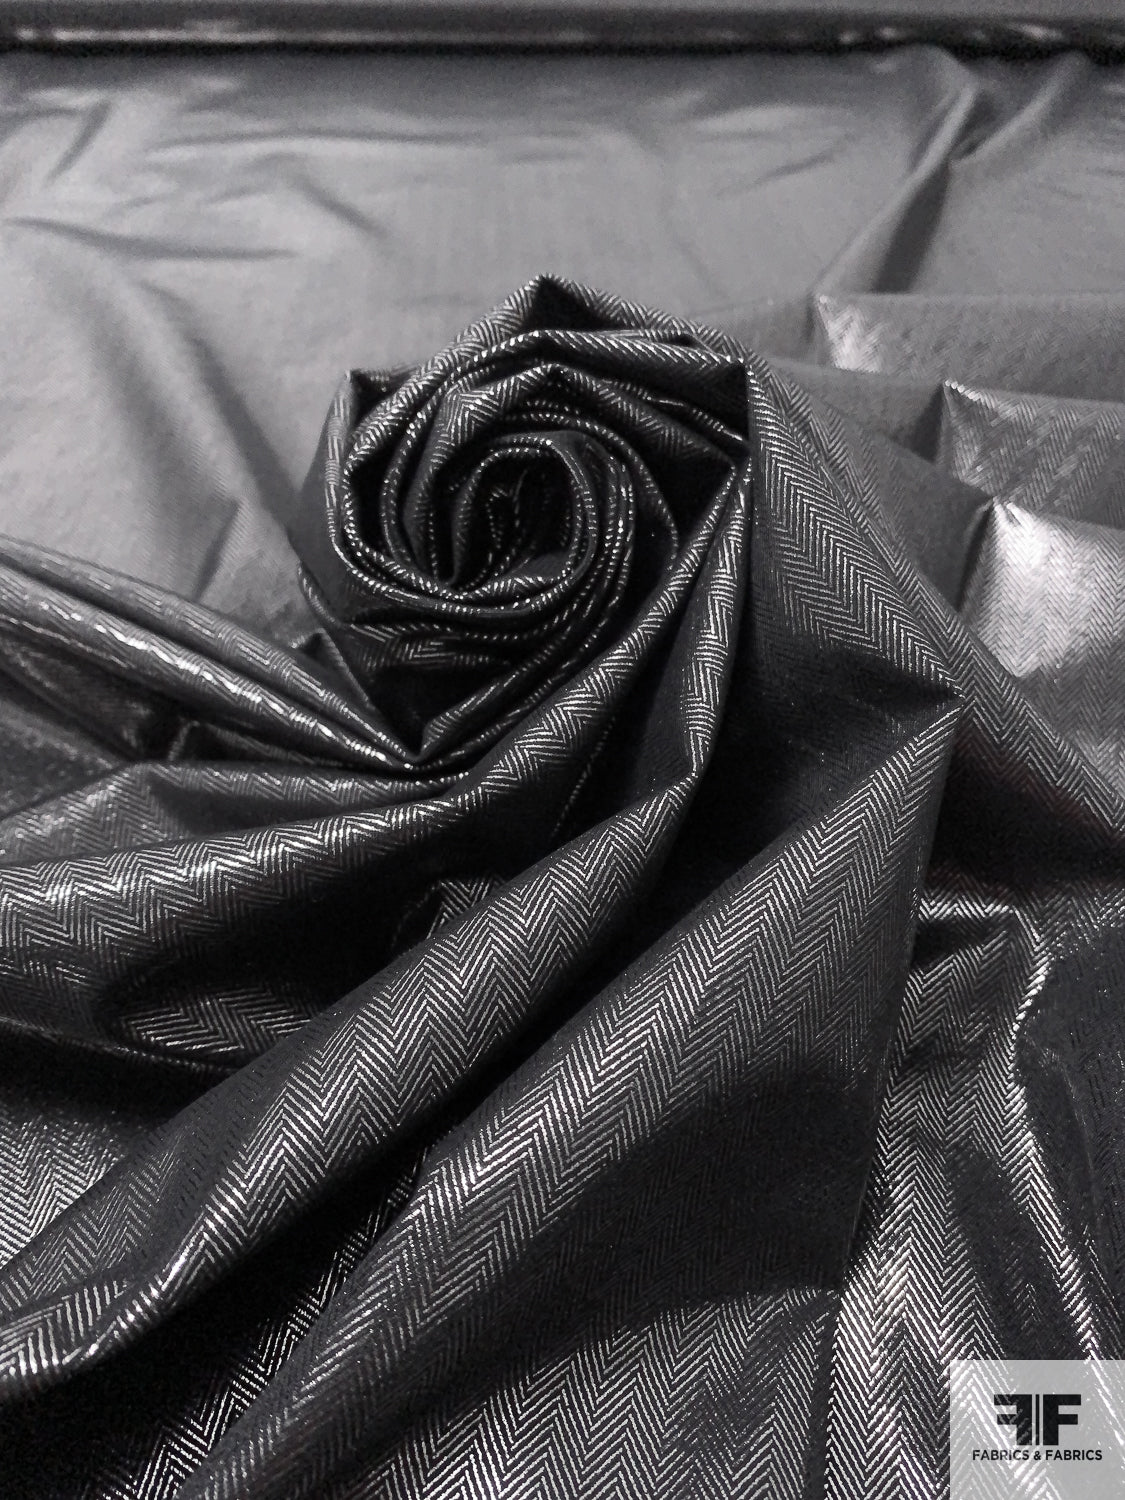 Italian Foil Printed Herringbone Stretch Cotton Blend - Black / Silver